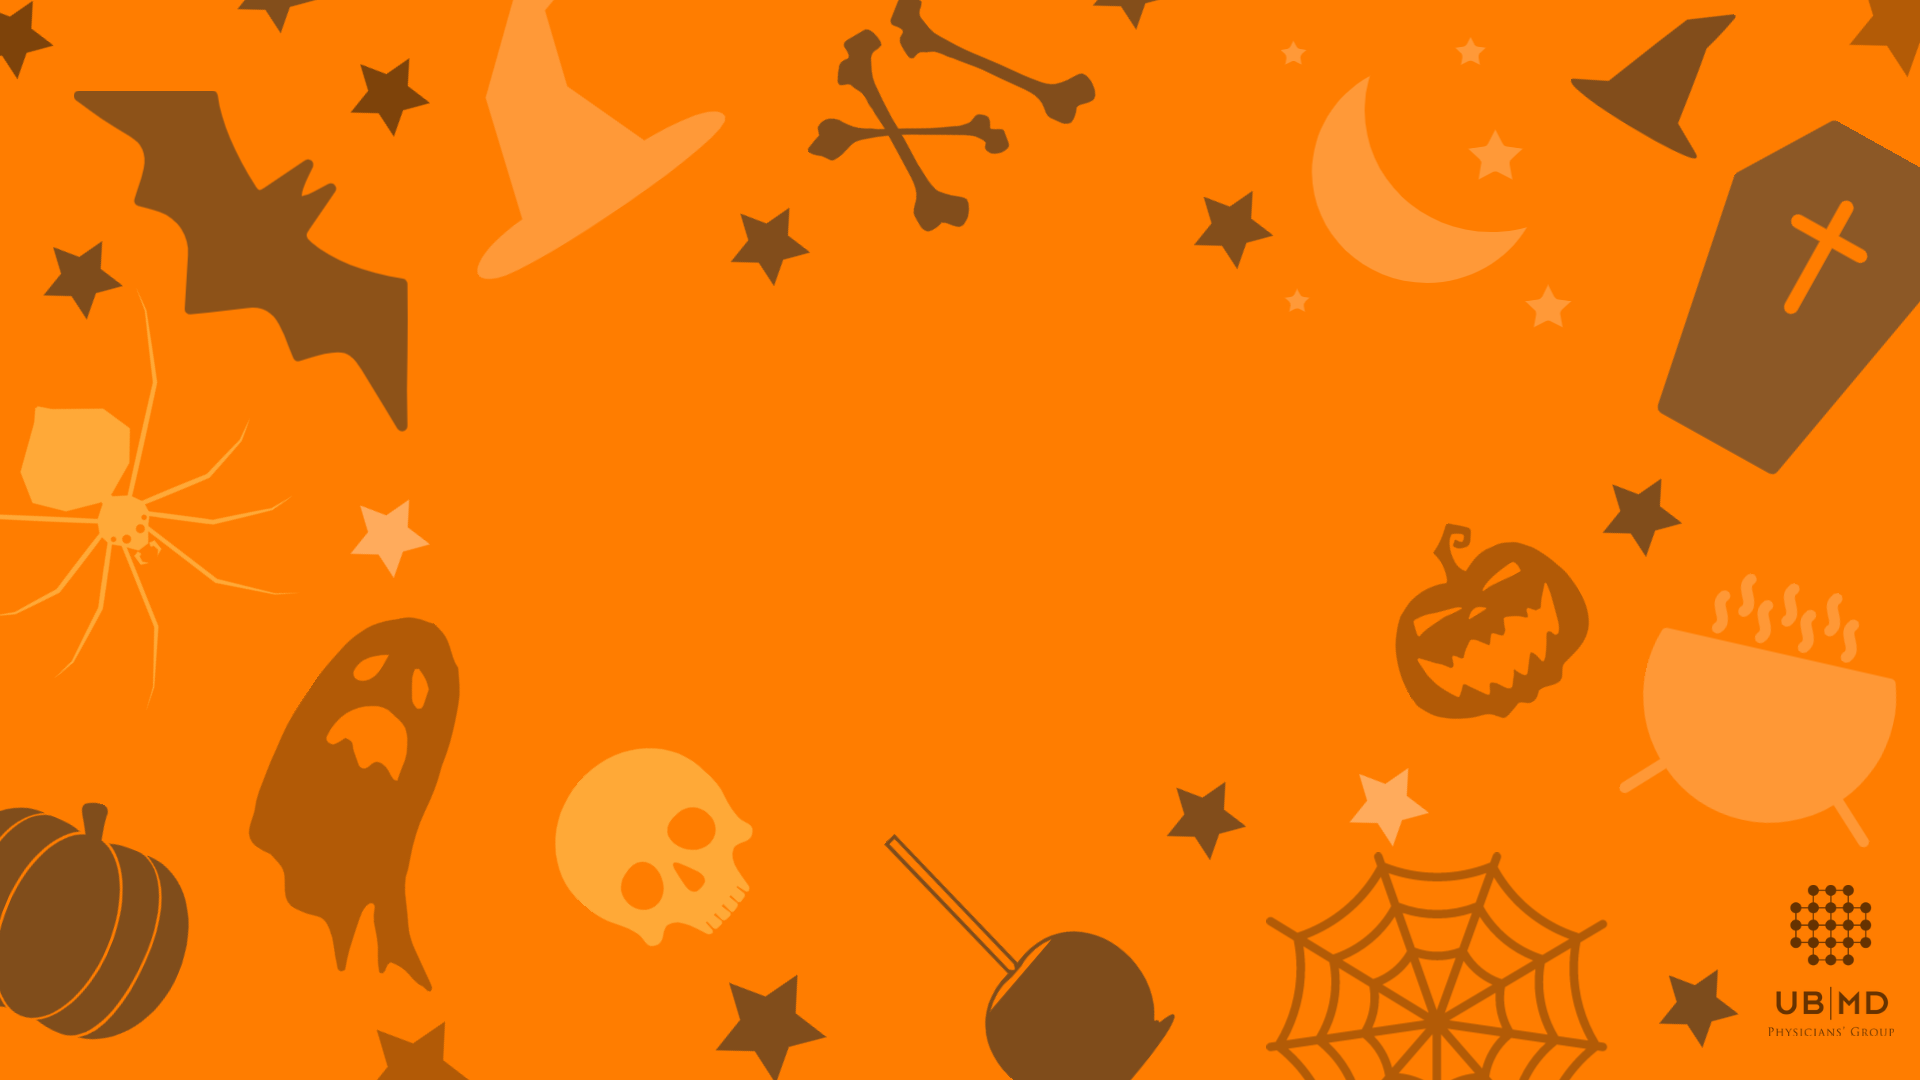 Halloween đang đến gần, bạn đã sẵn sàng chào đón niềm vui và sự hồi hộp trong ngày đặc biệt này chưa? Hãy cập nhật ngay các phông nền ảo Halloween độc đáo và hấp dẫn để thu hút ánh nhìn của người xung quanh nhé!